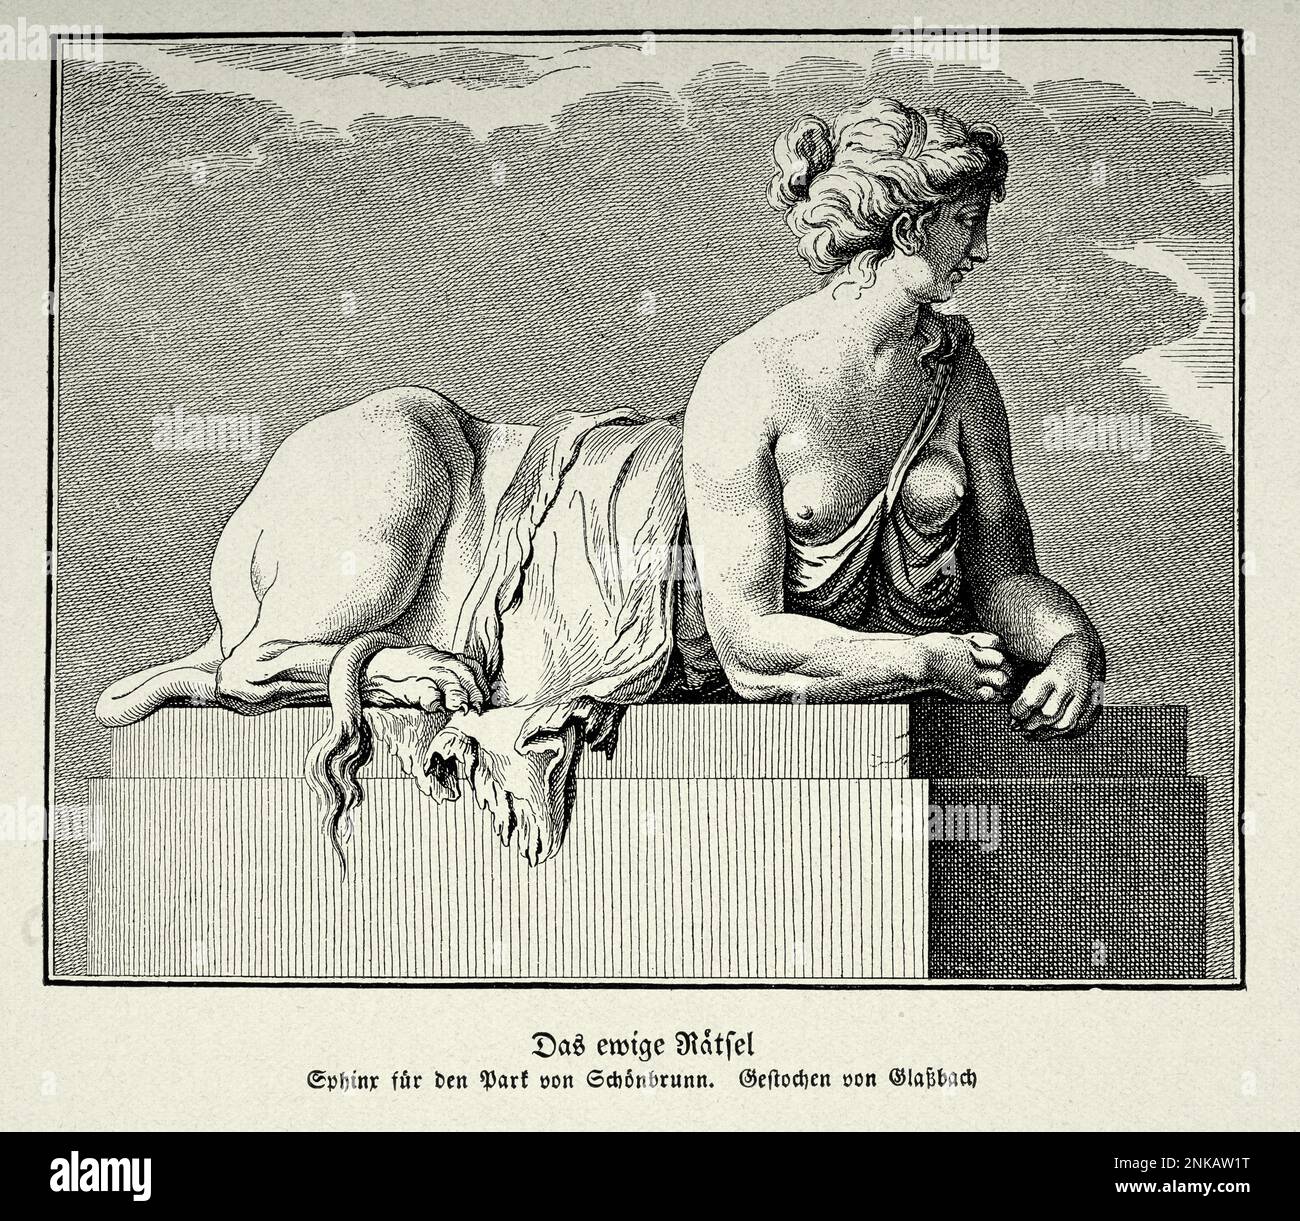 Vintage Illustration das ewige Geheimnis, die Sphinx, ein mythisches Wesen mit dem Kopf eines Menschen, dem Körper eines Löwen Stockfoto